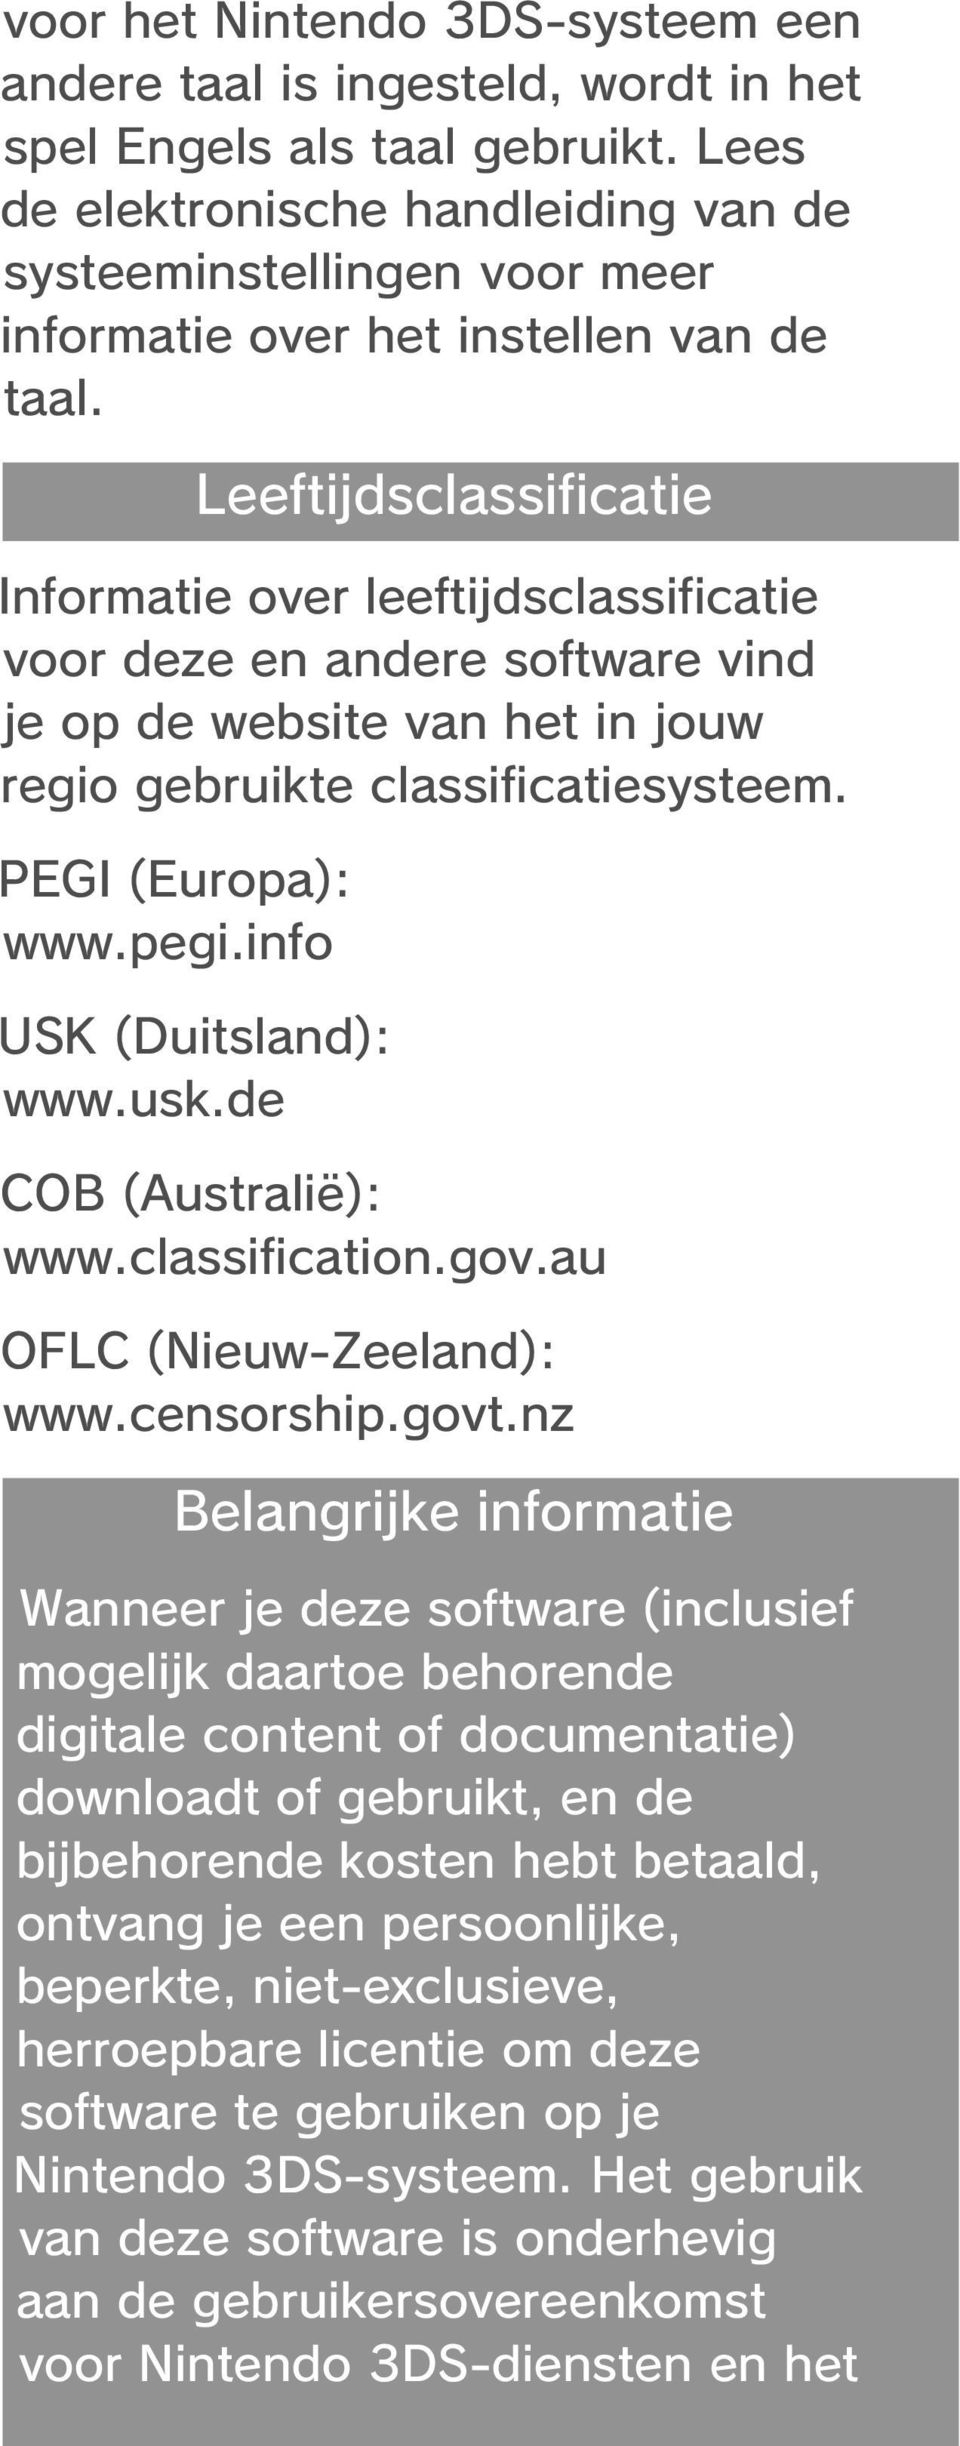 Informatie over leeftijdsclassificatie voor deze en andere software vind je op de website van het in jouw regio gebruikte classificatiesysteem. PEGI (Europa): www.pegi.info USK (Duitsland): www.usk.